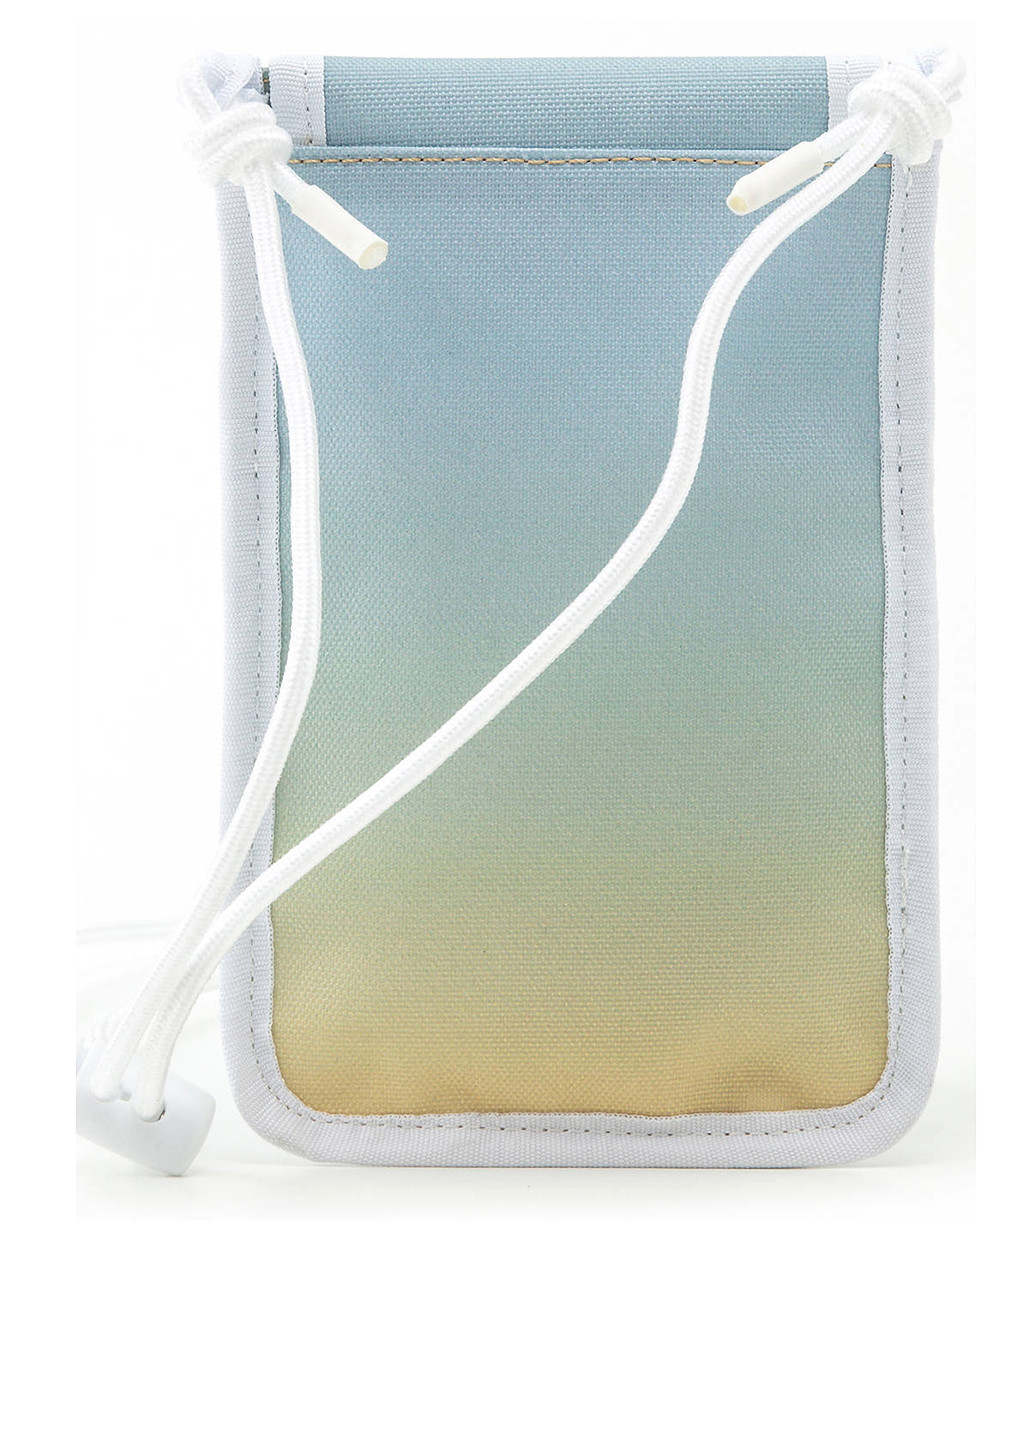 Сумка Levi's сумка-кошелёк логотип голубая кэжуал